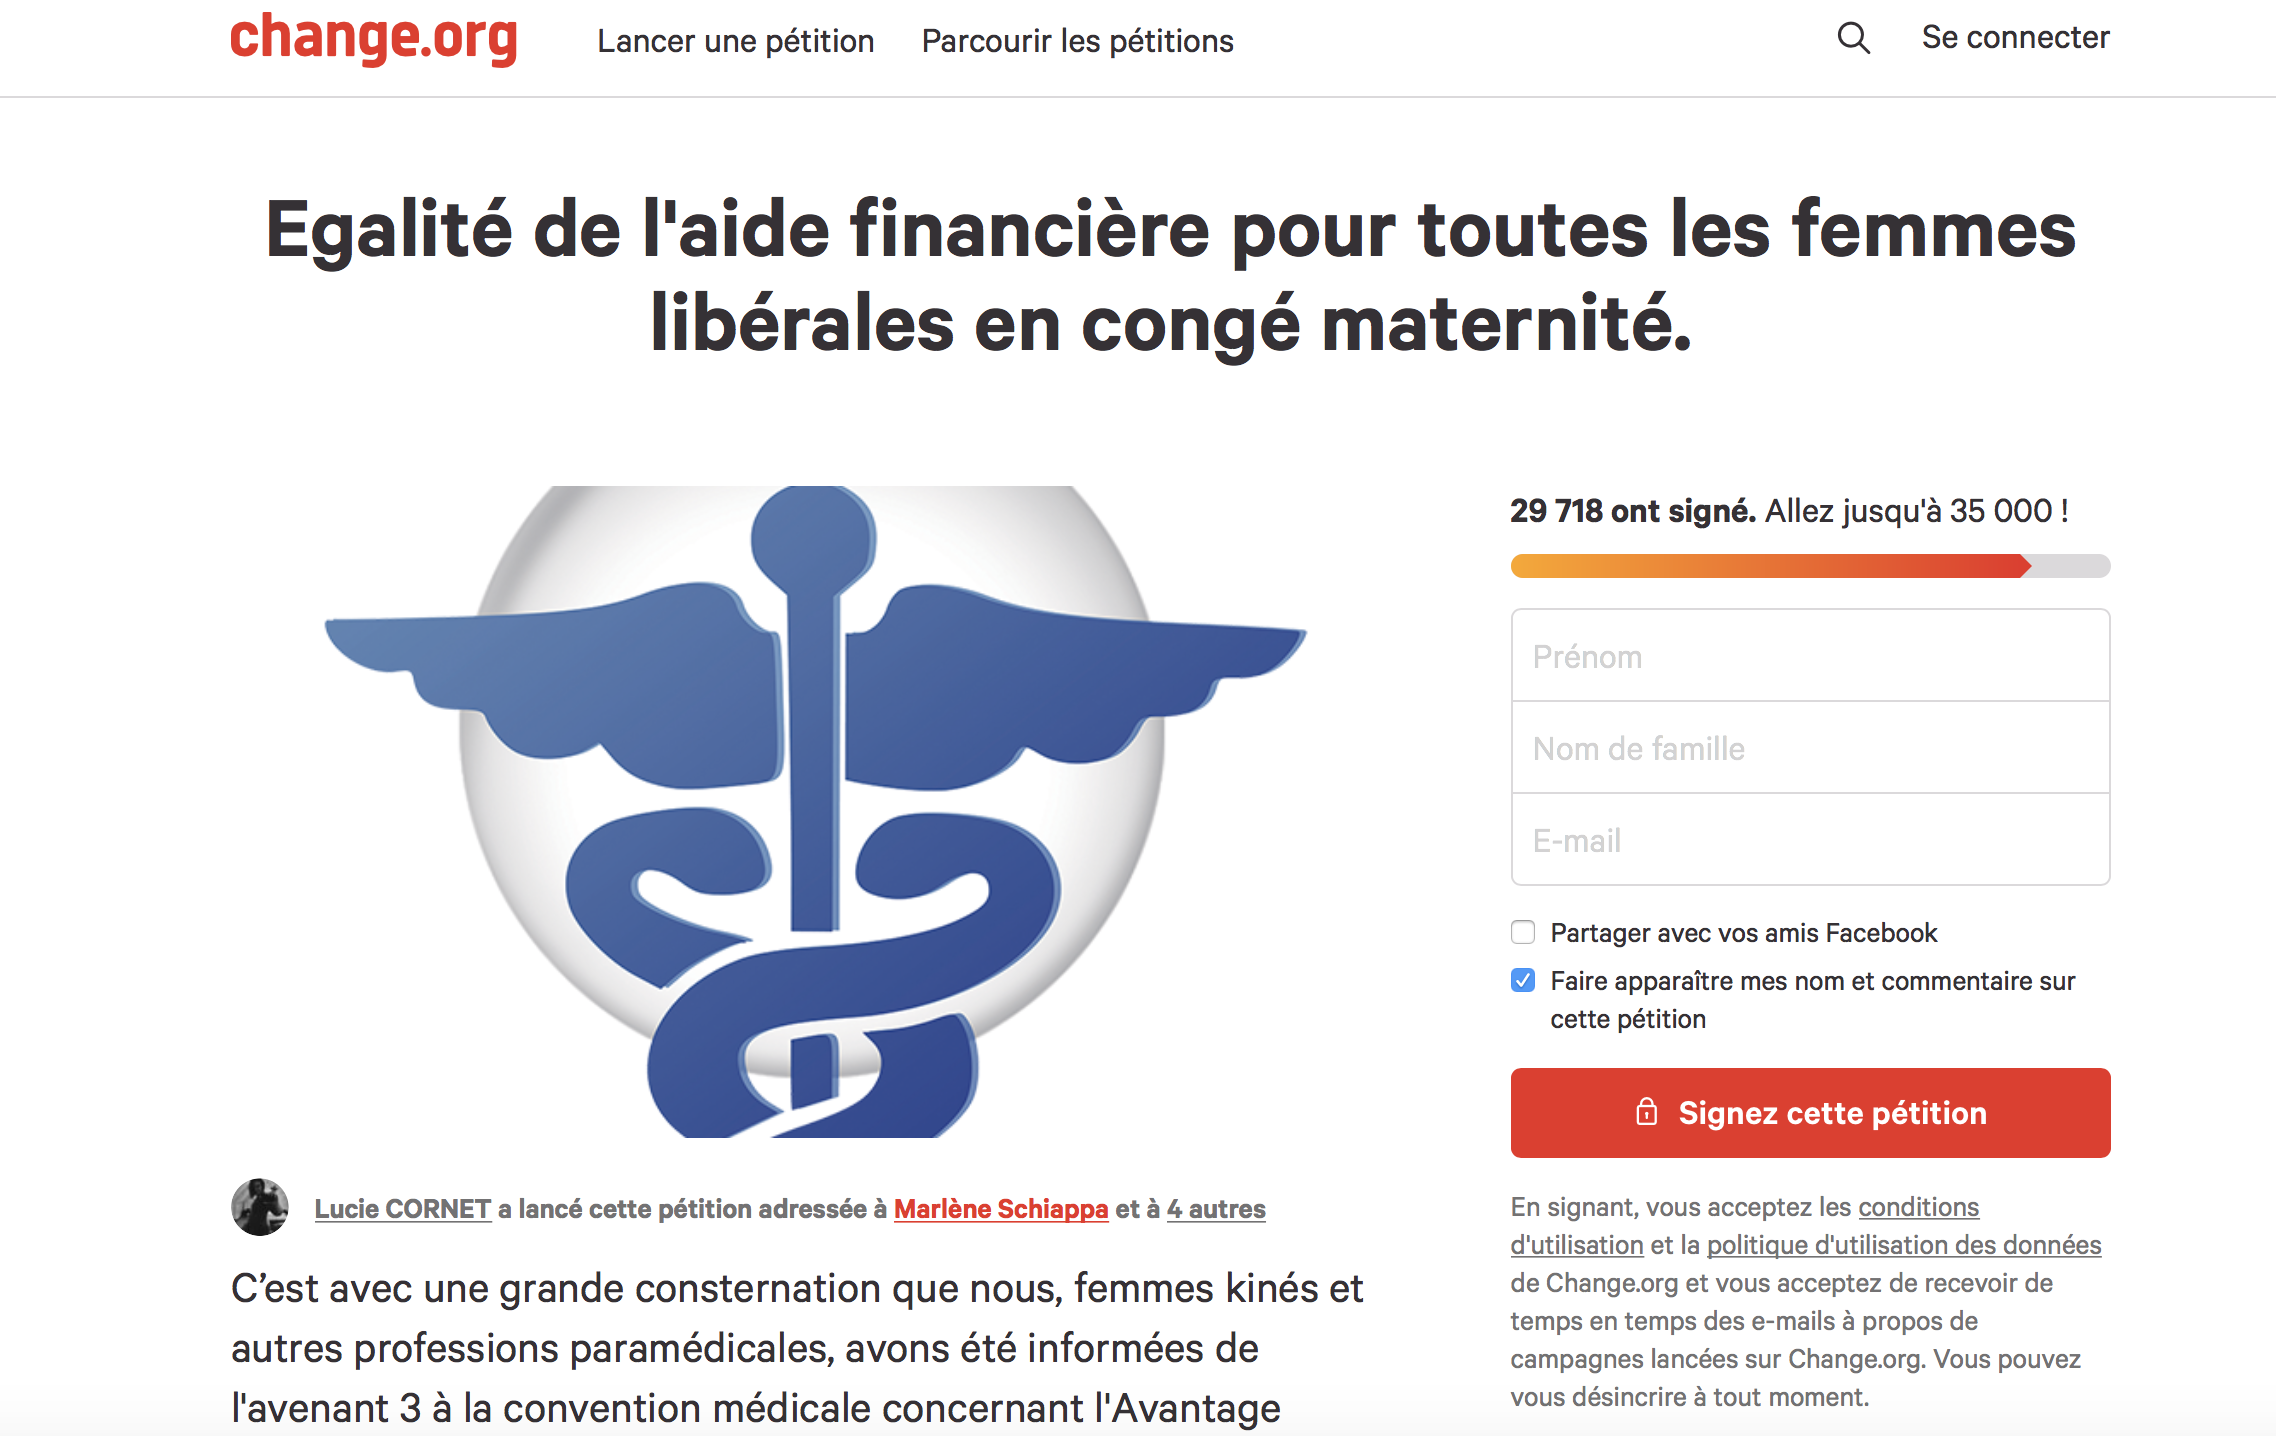 Une pétition pour un congé maternité pour toutes les professions libérales